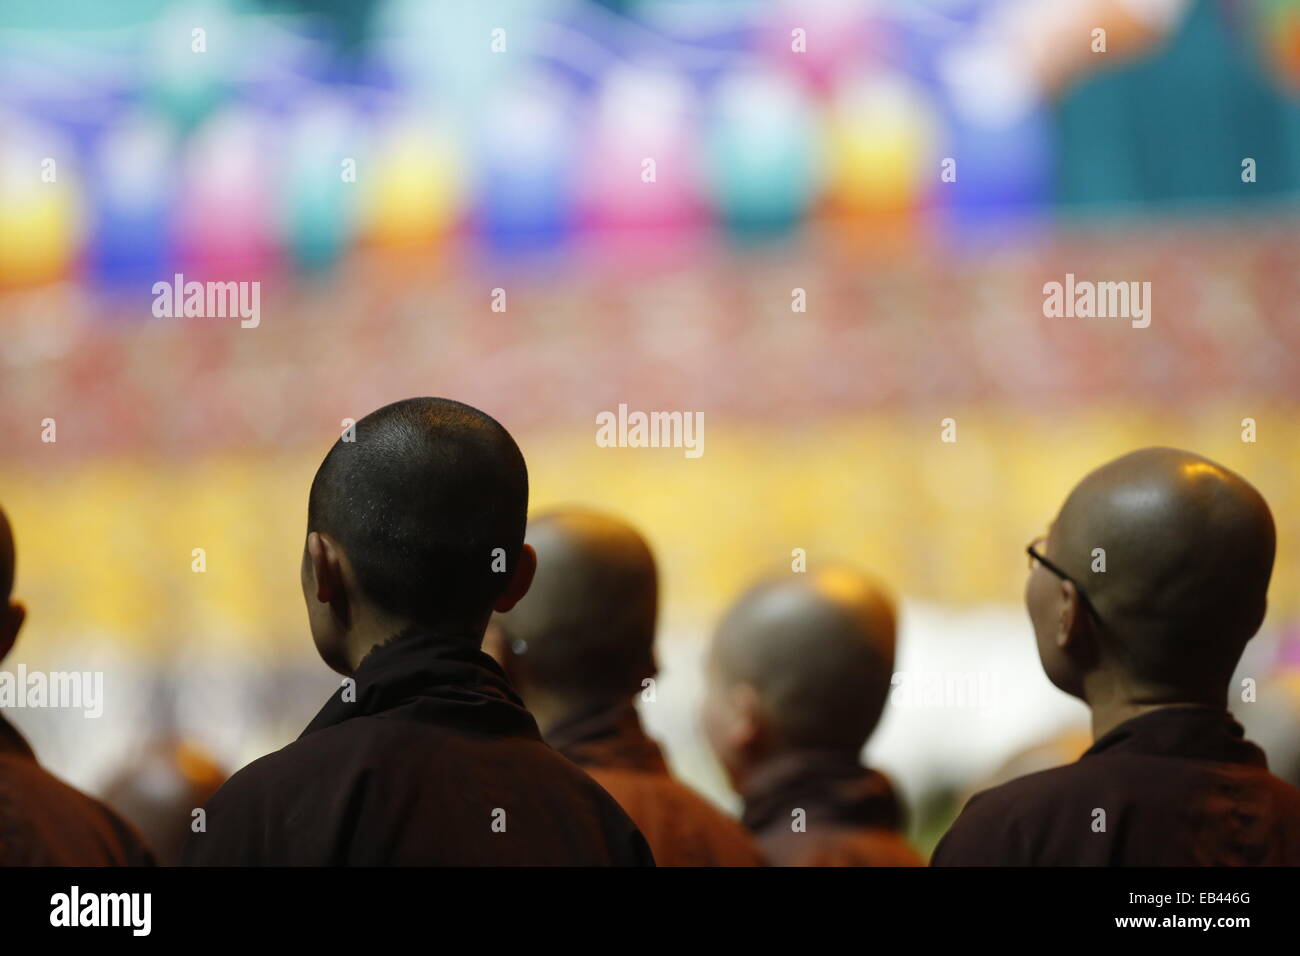 Monks assister à l'enseignement par le dalaï-lama à Louisville Kentucky. Louisville's, le Centre bouddhique tibétain Drépoung Gomang Institute, et de la ville de Louisville accueillir Sa Sainteté le Dalaï Lama du 19 au 21 mai 2013. L'événement de deux jours, intitulé "Engagement de la Compassion", a commencé le dimanche 19 mai au YUM ! Lorsque le centre de Dalaï-Lama présentera une conférence publique à une foule de 16 000. Banque D'Images